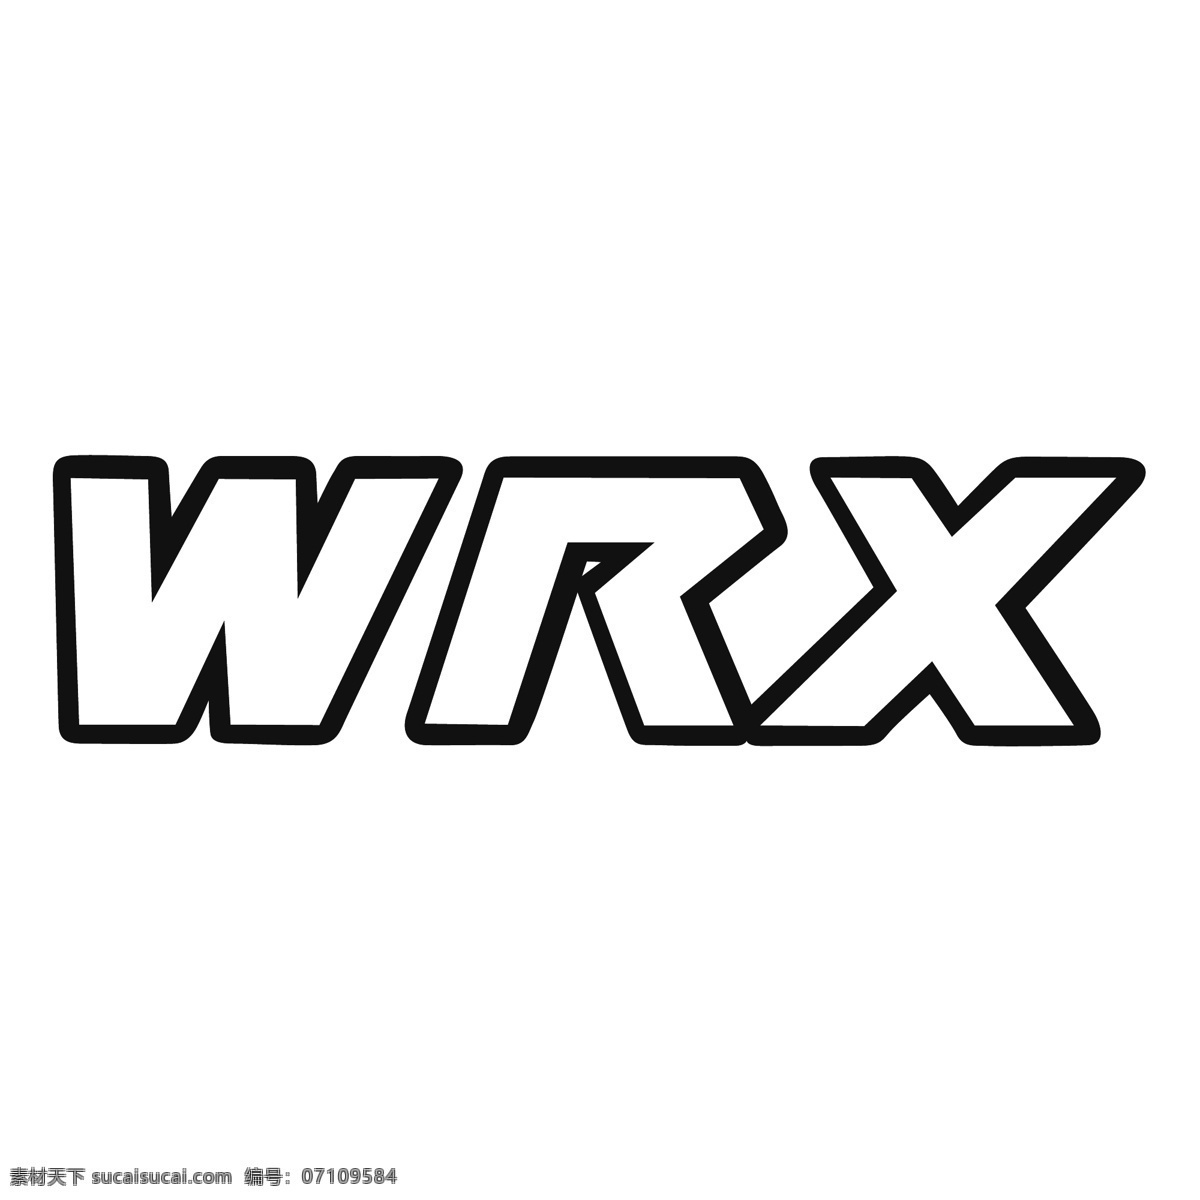 wrx 翼豹wrx sti 标志 向量 矢量 向量的wrx 标志的wrx 翼 豹 蓝色